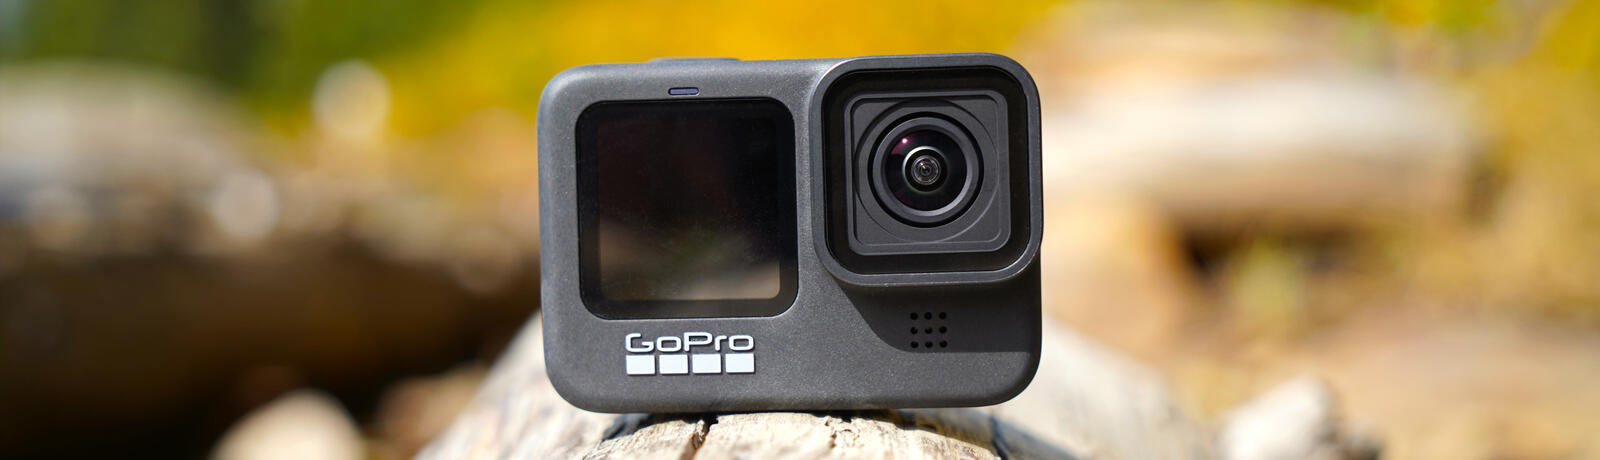 GoPro onderuit op magere vooruitzichten | Bolero